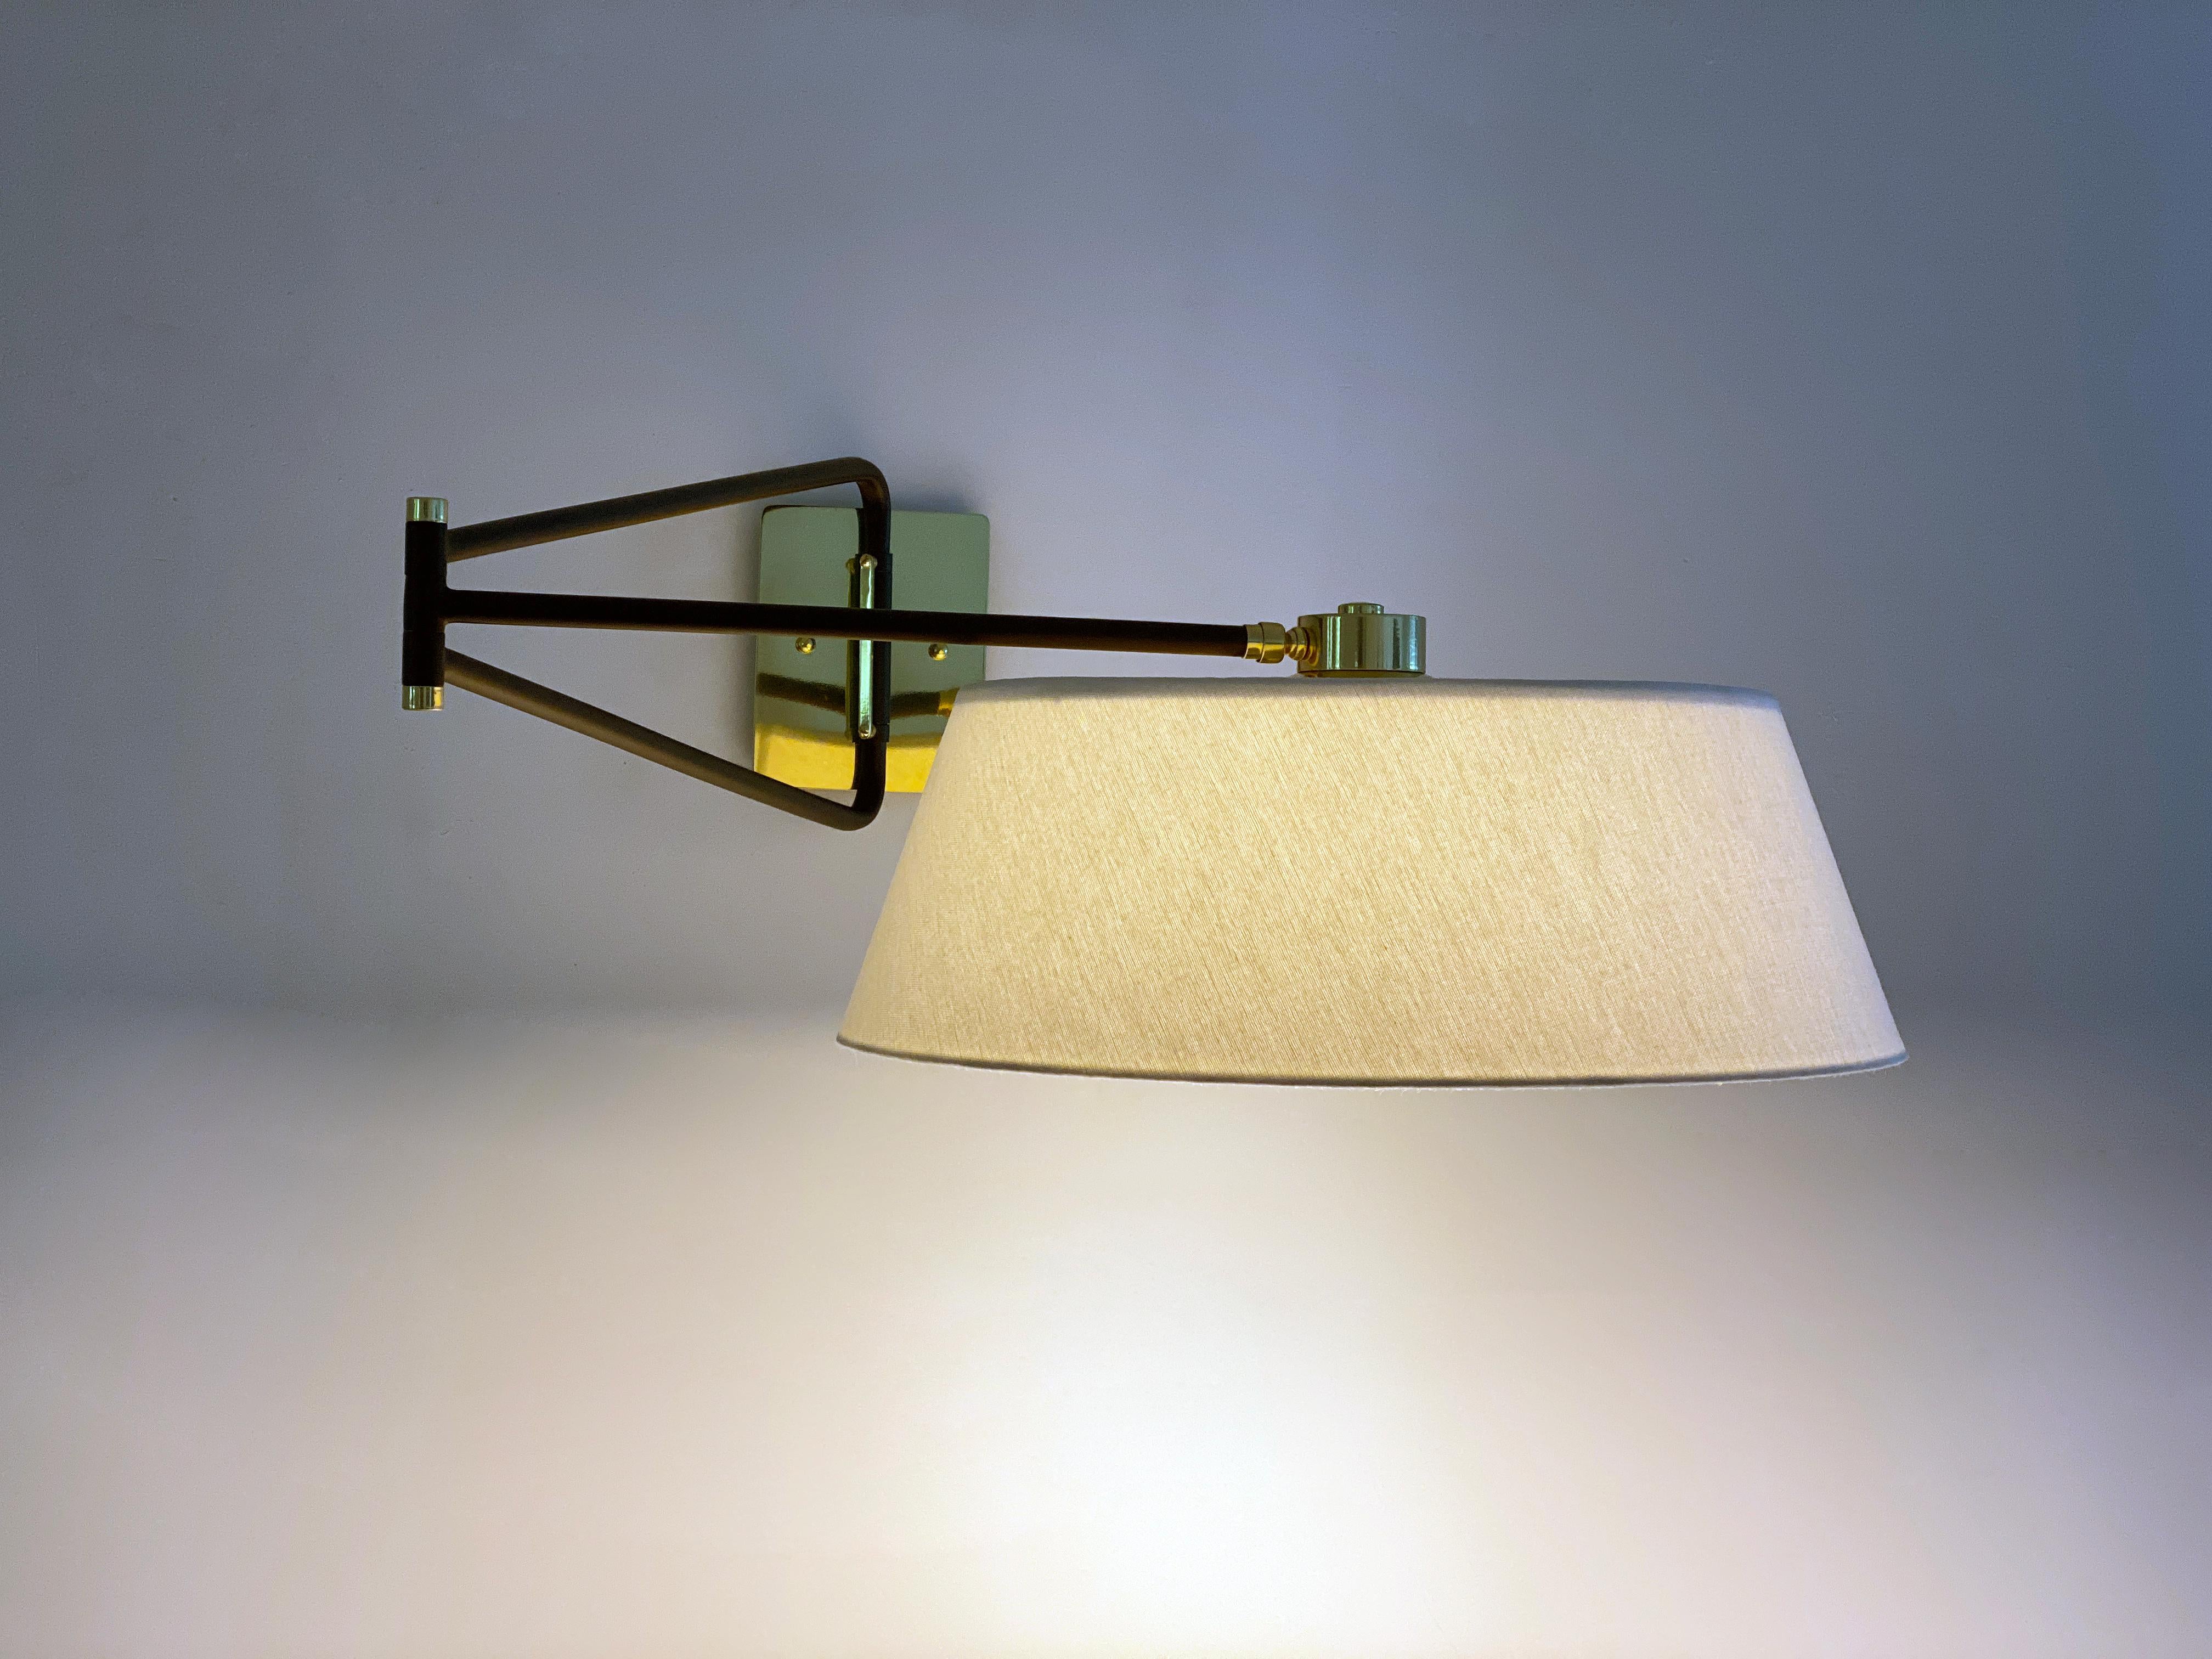 Diese elegante Leuchte ist von der französischen Mitte der 1950er Jahre inspiriert. Es ist ein Gegenstück zu unserer Bolivar-Leuchte. Die Leuchte mit ihrem einseitig nach unten gerichteten Schirm und dem Gelenkarm ist eine vielseitige Lichtquelle.